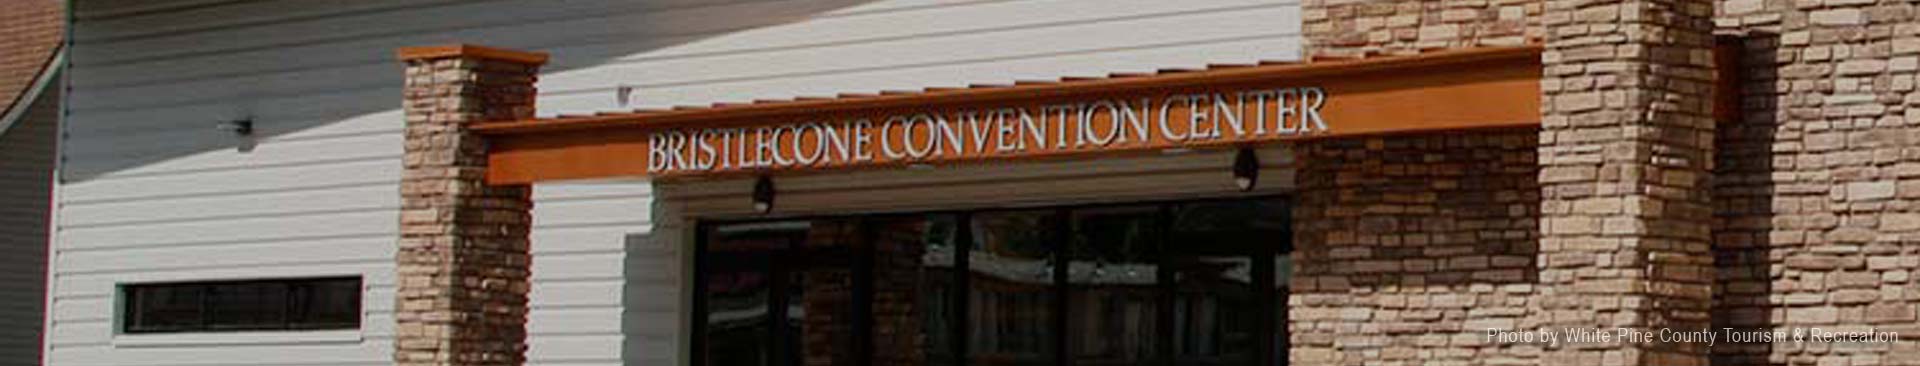 Bristlecone Convention Center